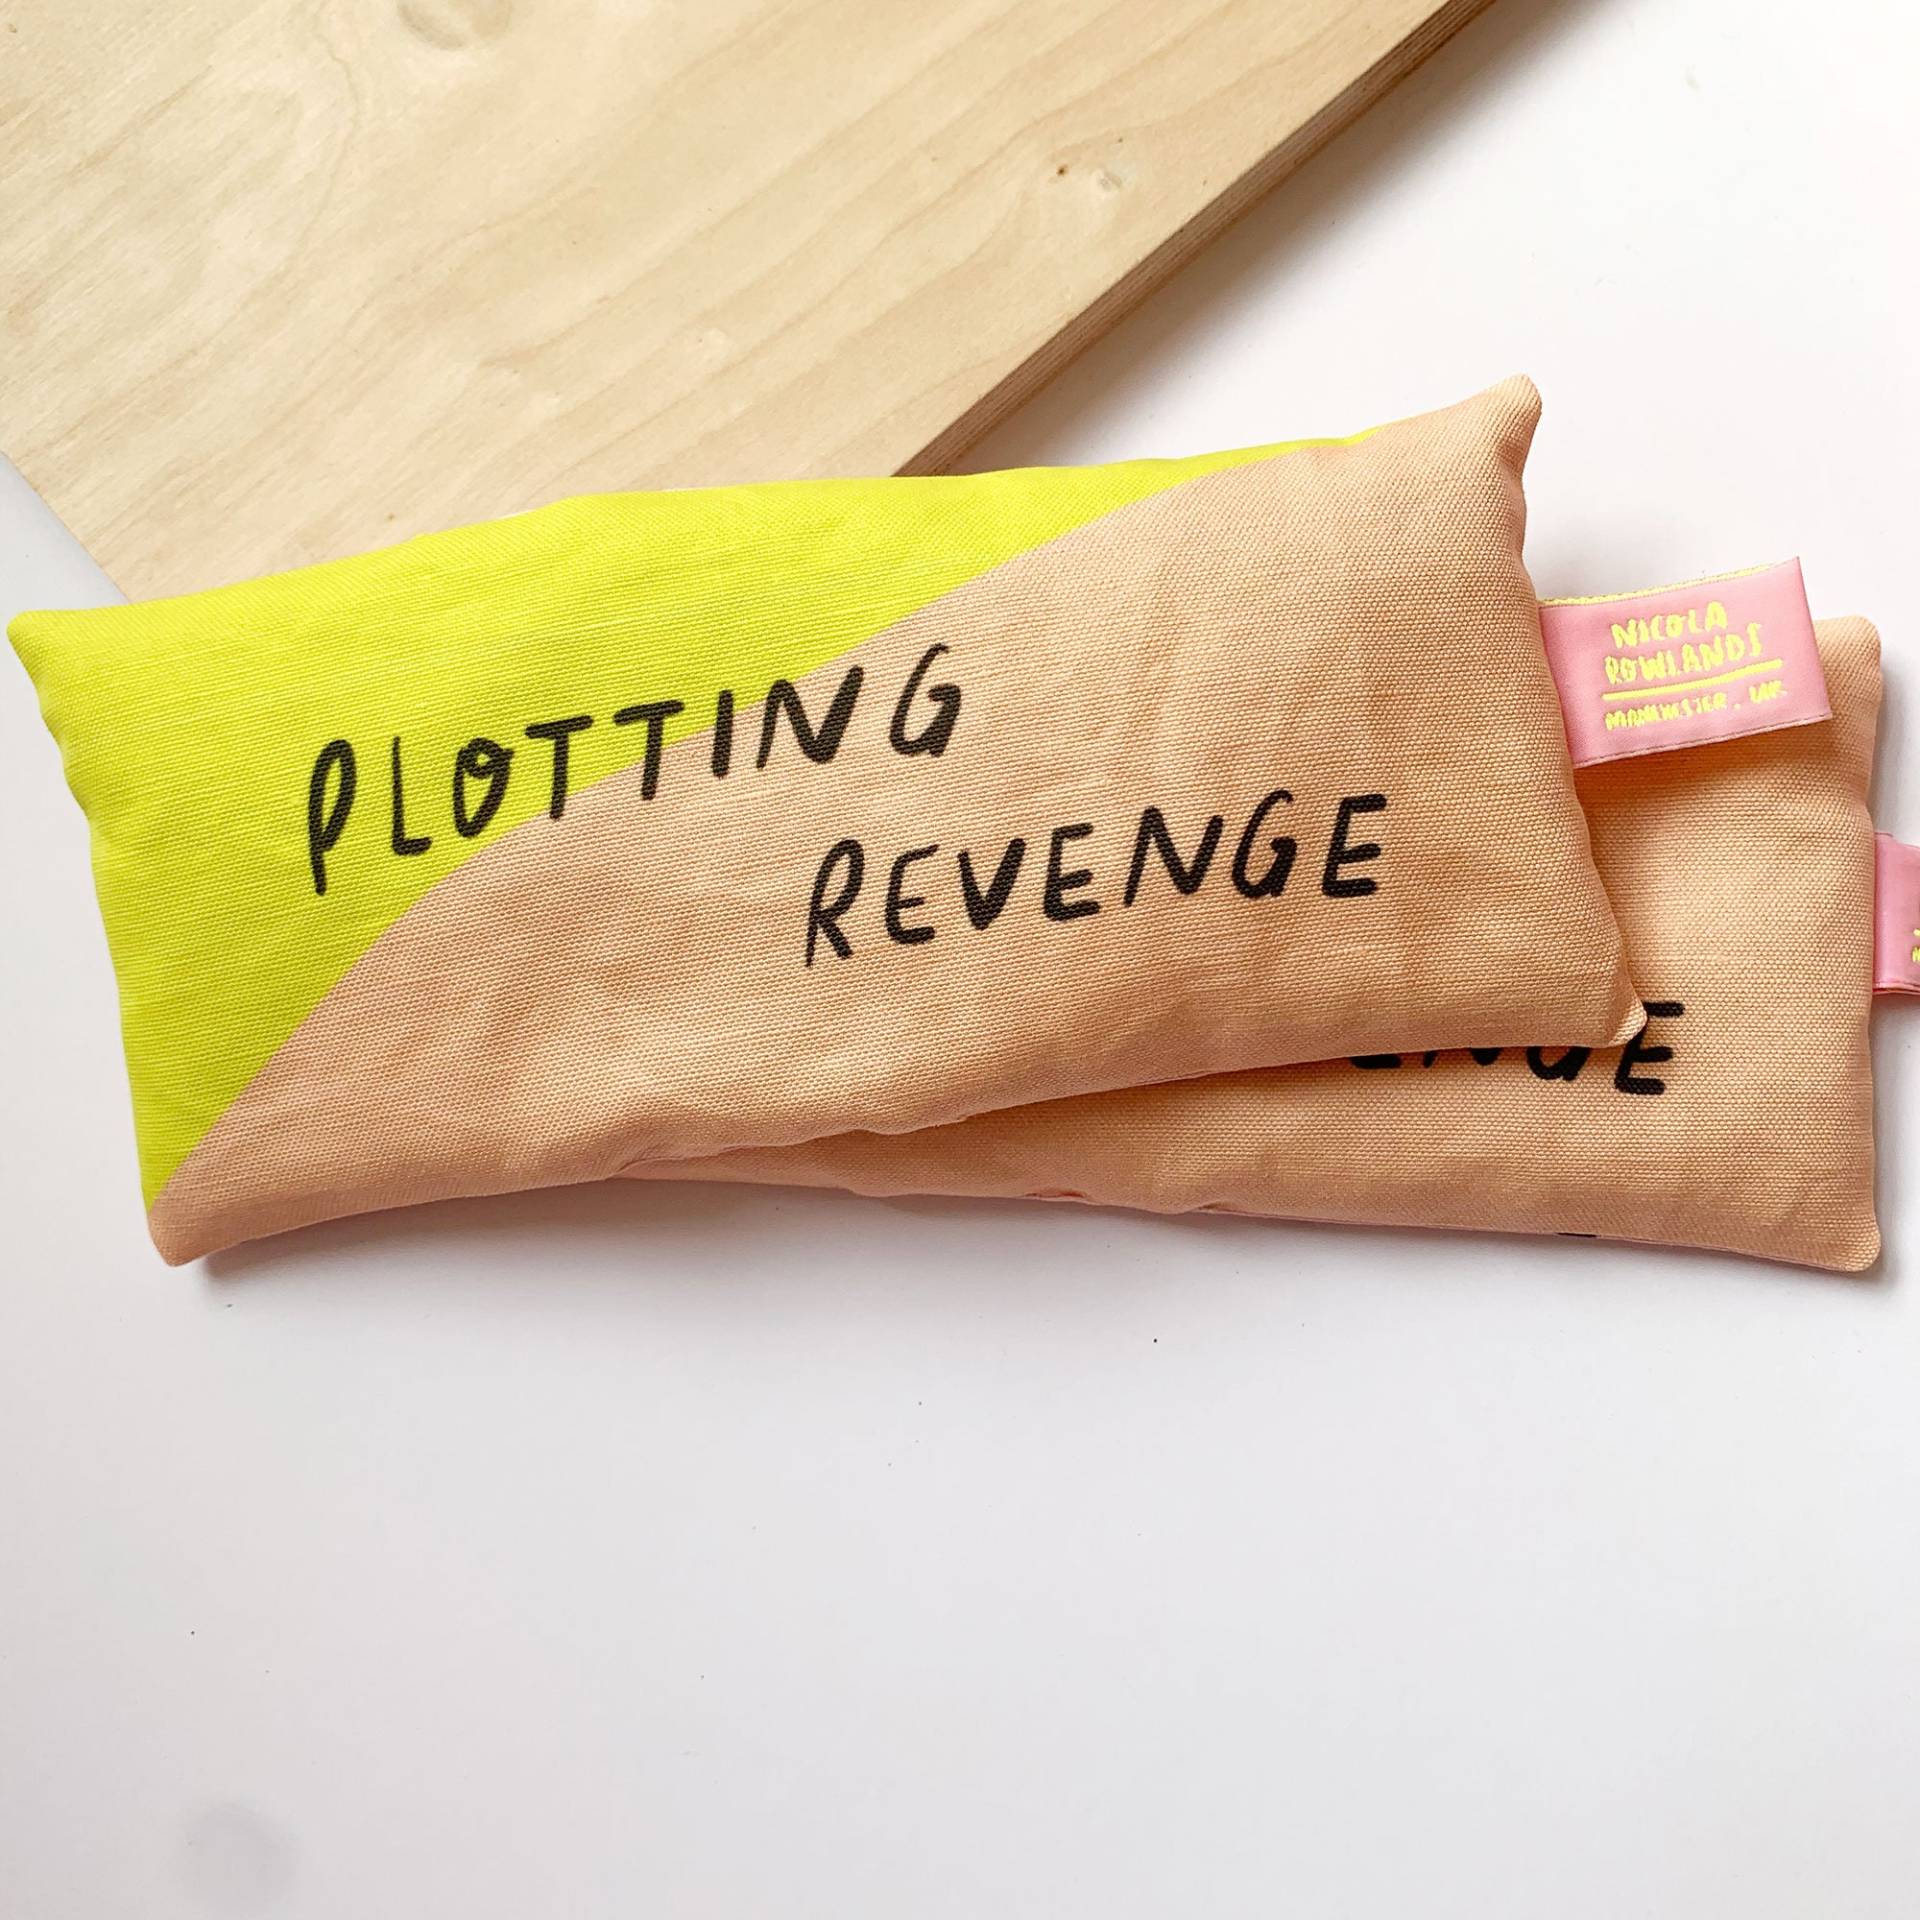 Plotting Revenge Handgemachte Lavendel Eyebag von MsSpanner